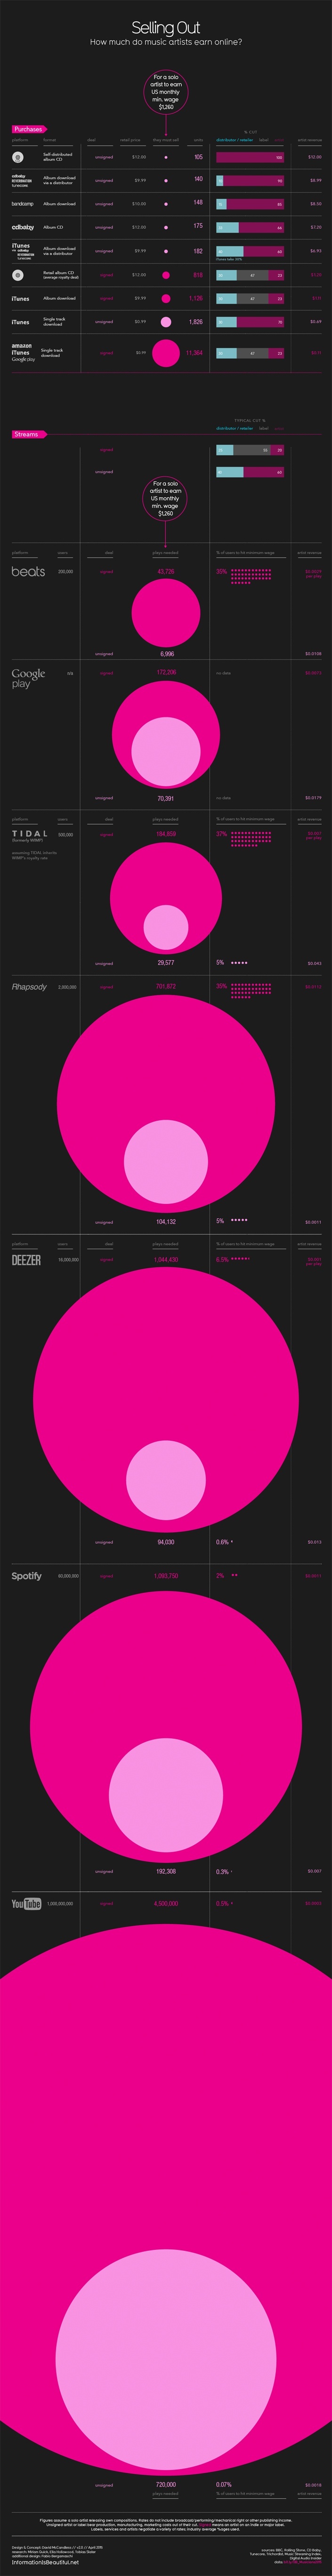 Ventas de música online: un gráfico que revela todos los números